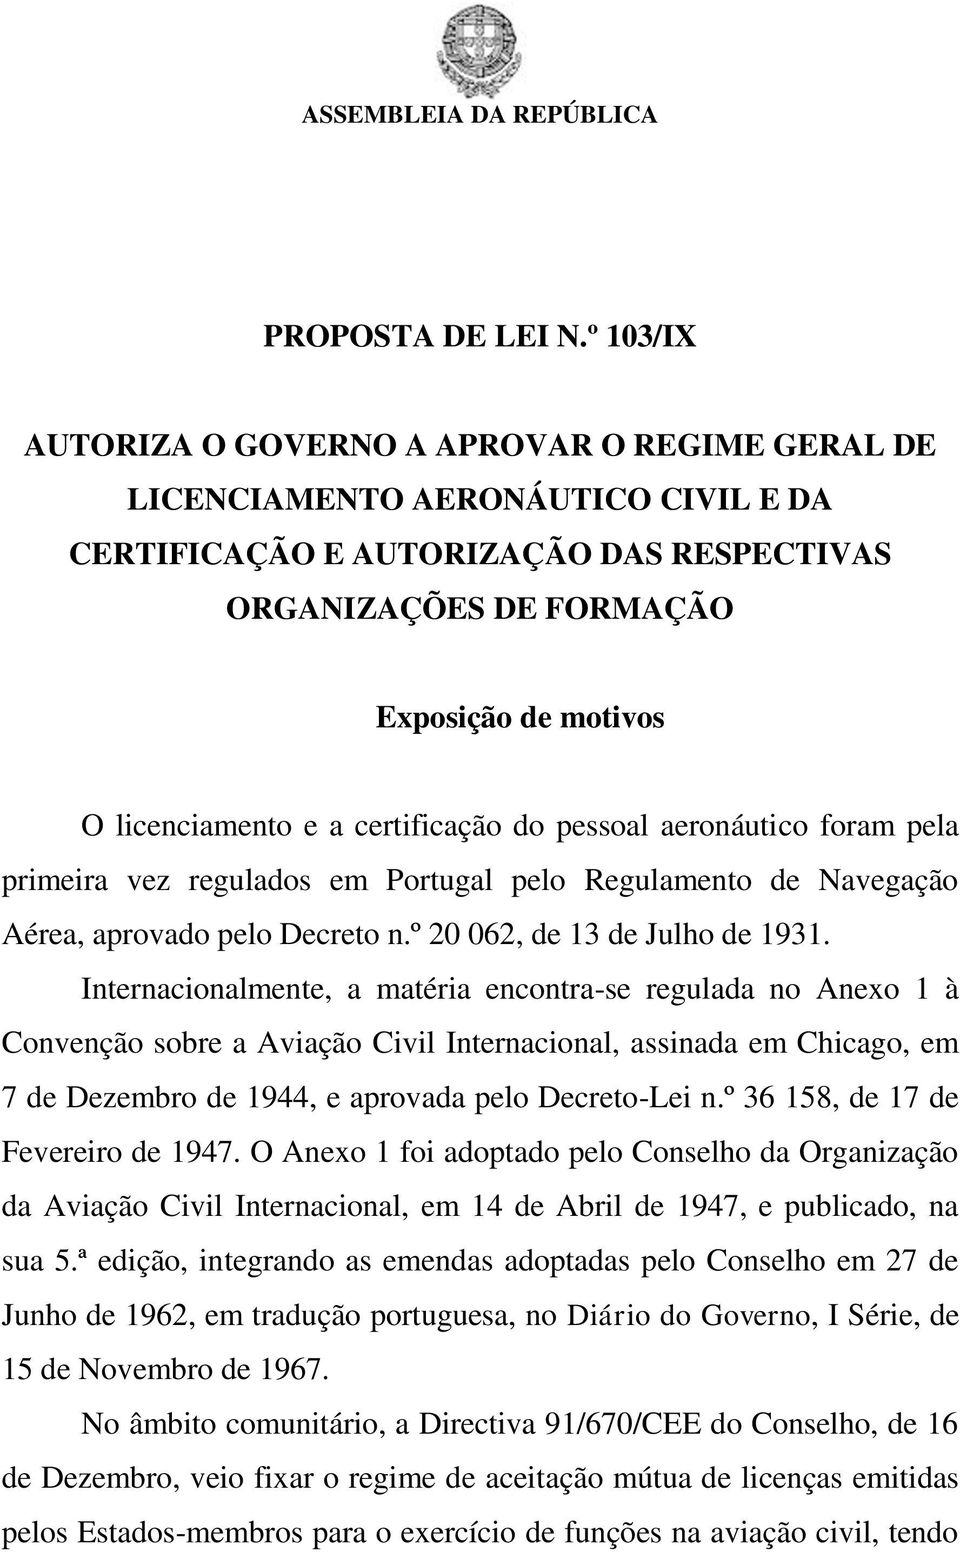 a certificação do pessoal aeronáutico foram pela primeira vez regulados em Portugal pelo Regulamento de Navegação Aérea, aprovado pelo Decreto n.º 20 062, de 13 de Julho de 1931.